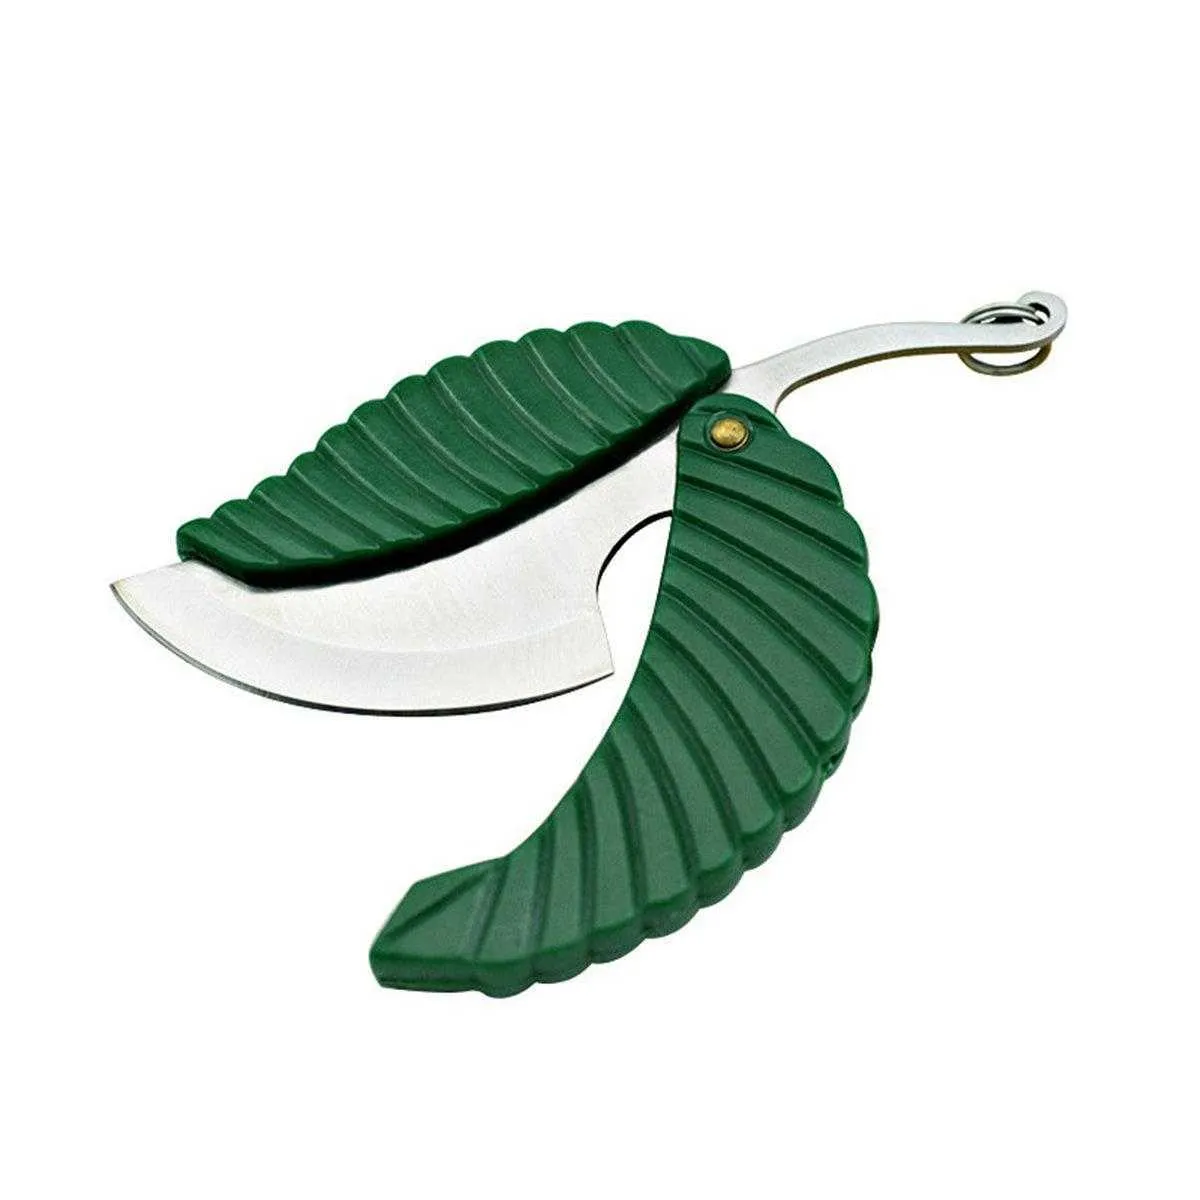 الأخضر البسيطة للطي جيب سكين ورقة شكل التصميم المفاتيح سكين كامب الفاكهة سكين التخييم التنزه بقاء أداة DHJ19